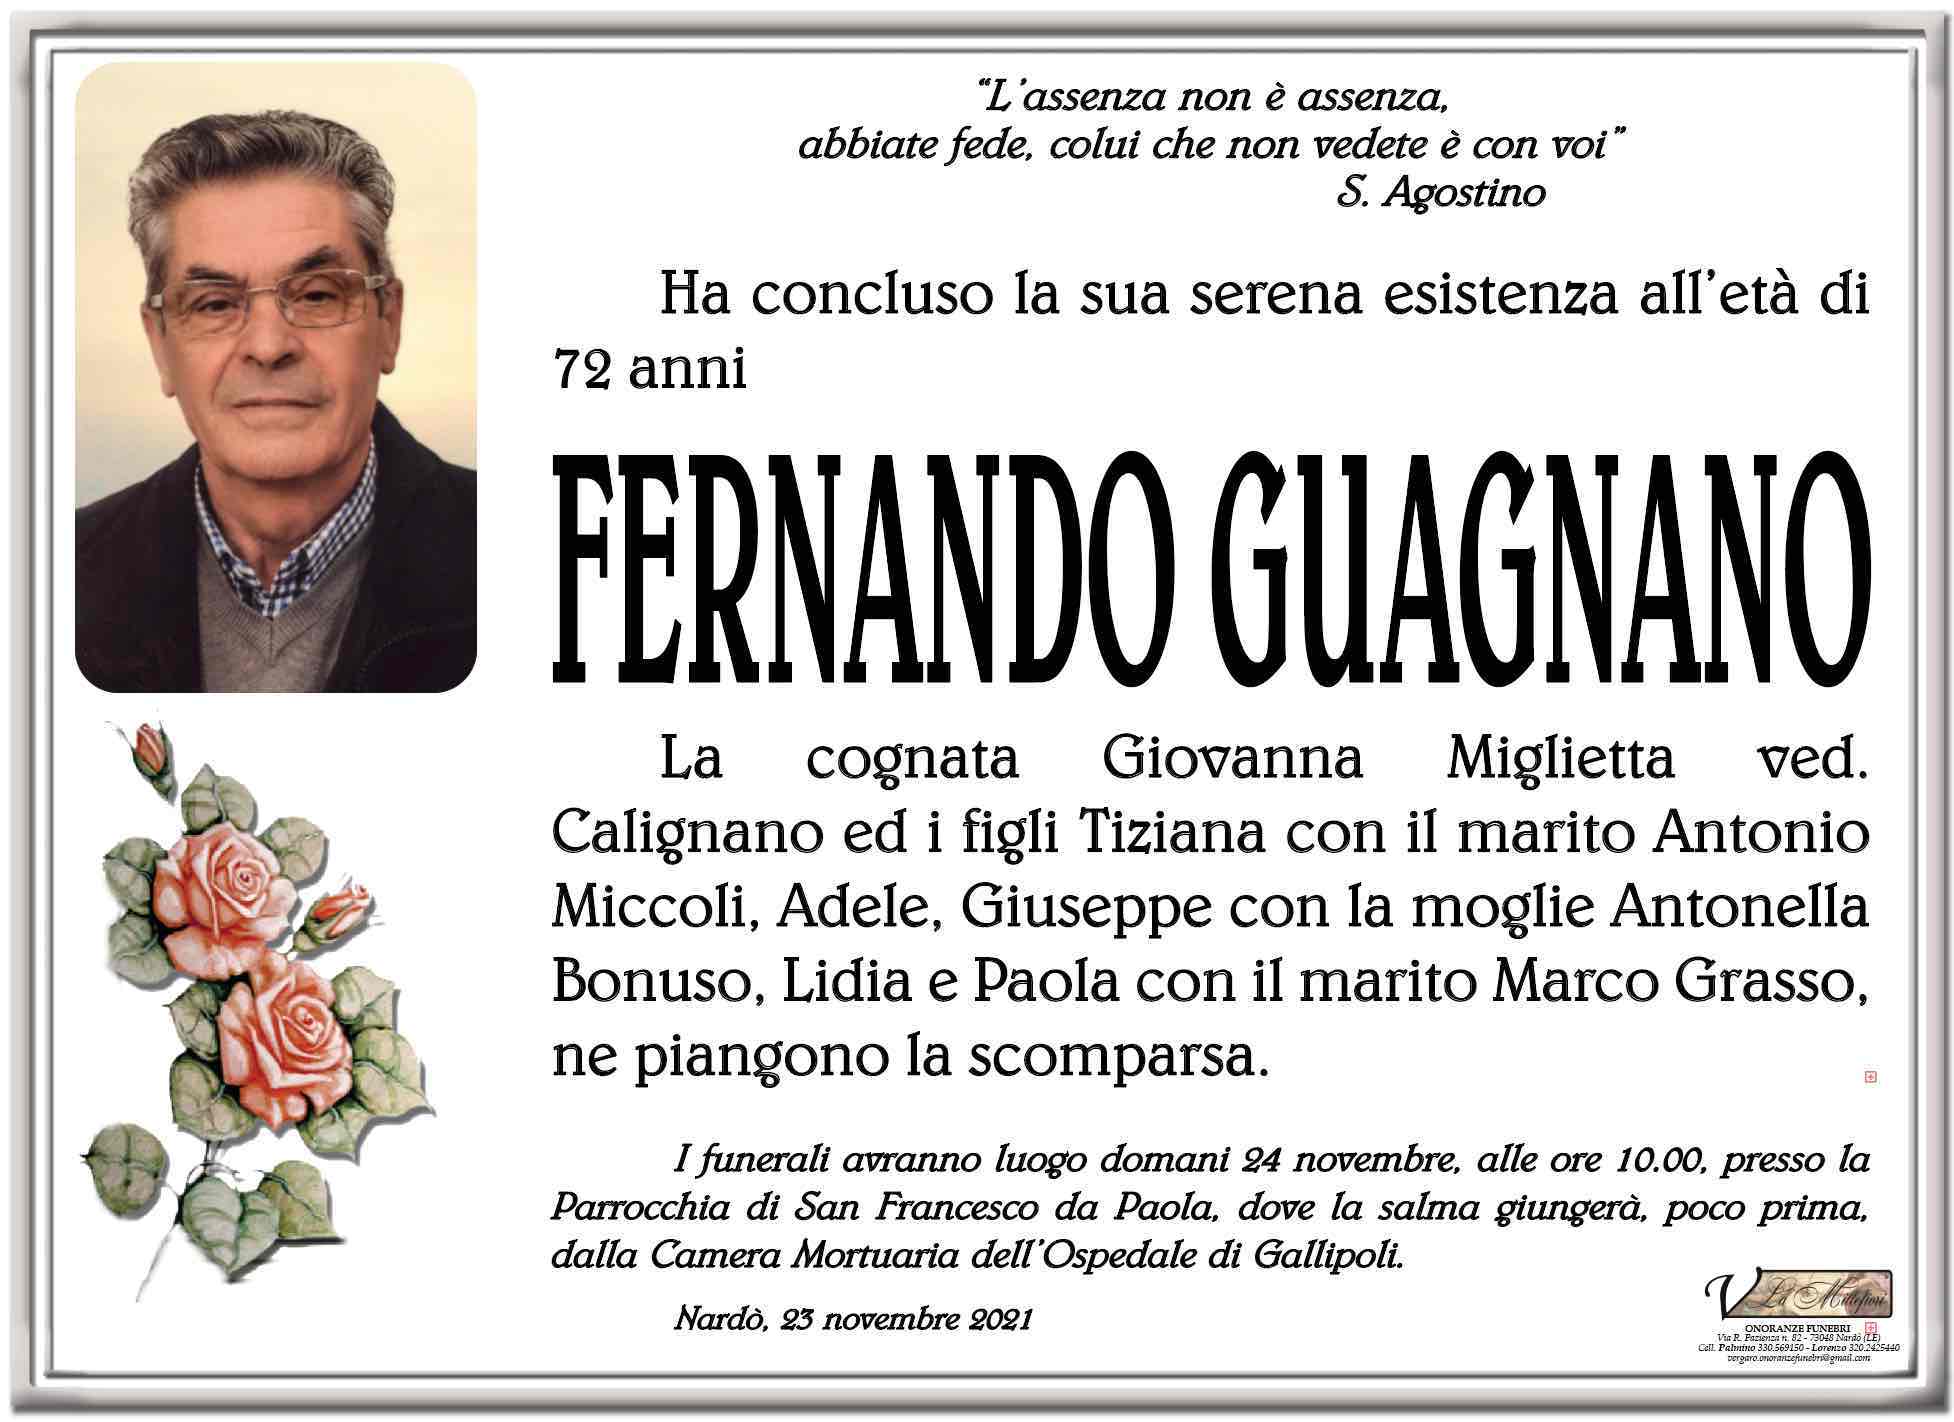 Fernando Guagnano